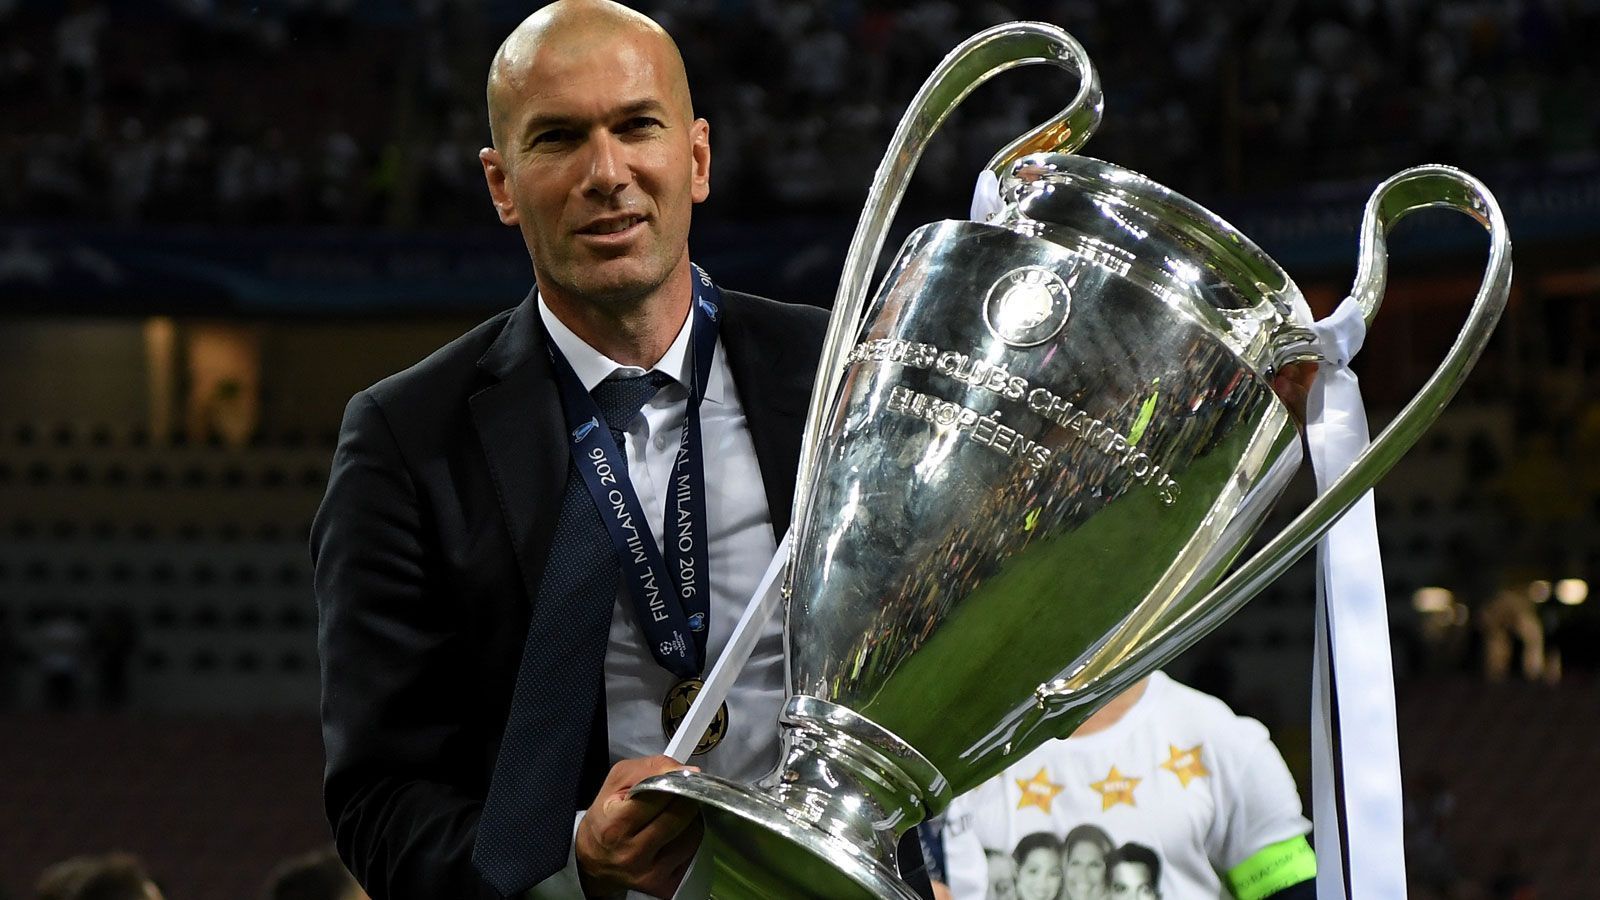 
                <strong>Zinedine Zidane</strong><br>
                Rund um das Millennium war Zinedine Zidane der bestimmende Spieler im Weltfußball. 1998 köpfte er Frankreich zum WM-Titel, zwei Jahre später gewann der Mittelfeldstratege mit der "Equipe Tricolore" die Europameisterschaft. Dreimal wurde "Zizou" zum Weltfußballer gewählt, bei Real Madrid war er der Kopf der "Galaktischen". Größter Erfolg mit den "Königlichen" war der Triumph in der Champions League 2001/2002. Und auch als Trainer griff er mehrmals erfolgreich nach dem Henkelpott: Schon dreimal gewann Zidane in seiner zweiten Karriere den wichtigsten Vereinswettbewerb im europäischen Fußball. Zudem wurde er mit der zweimaligen Wahl zum Weltklubtrainer belohnt.
              